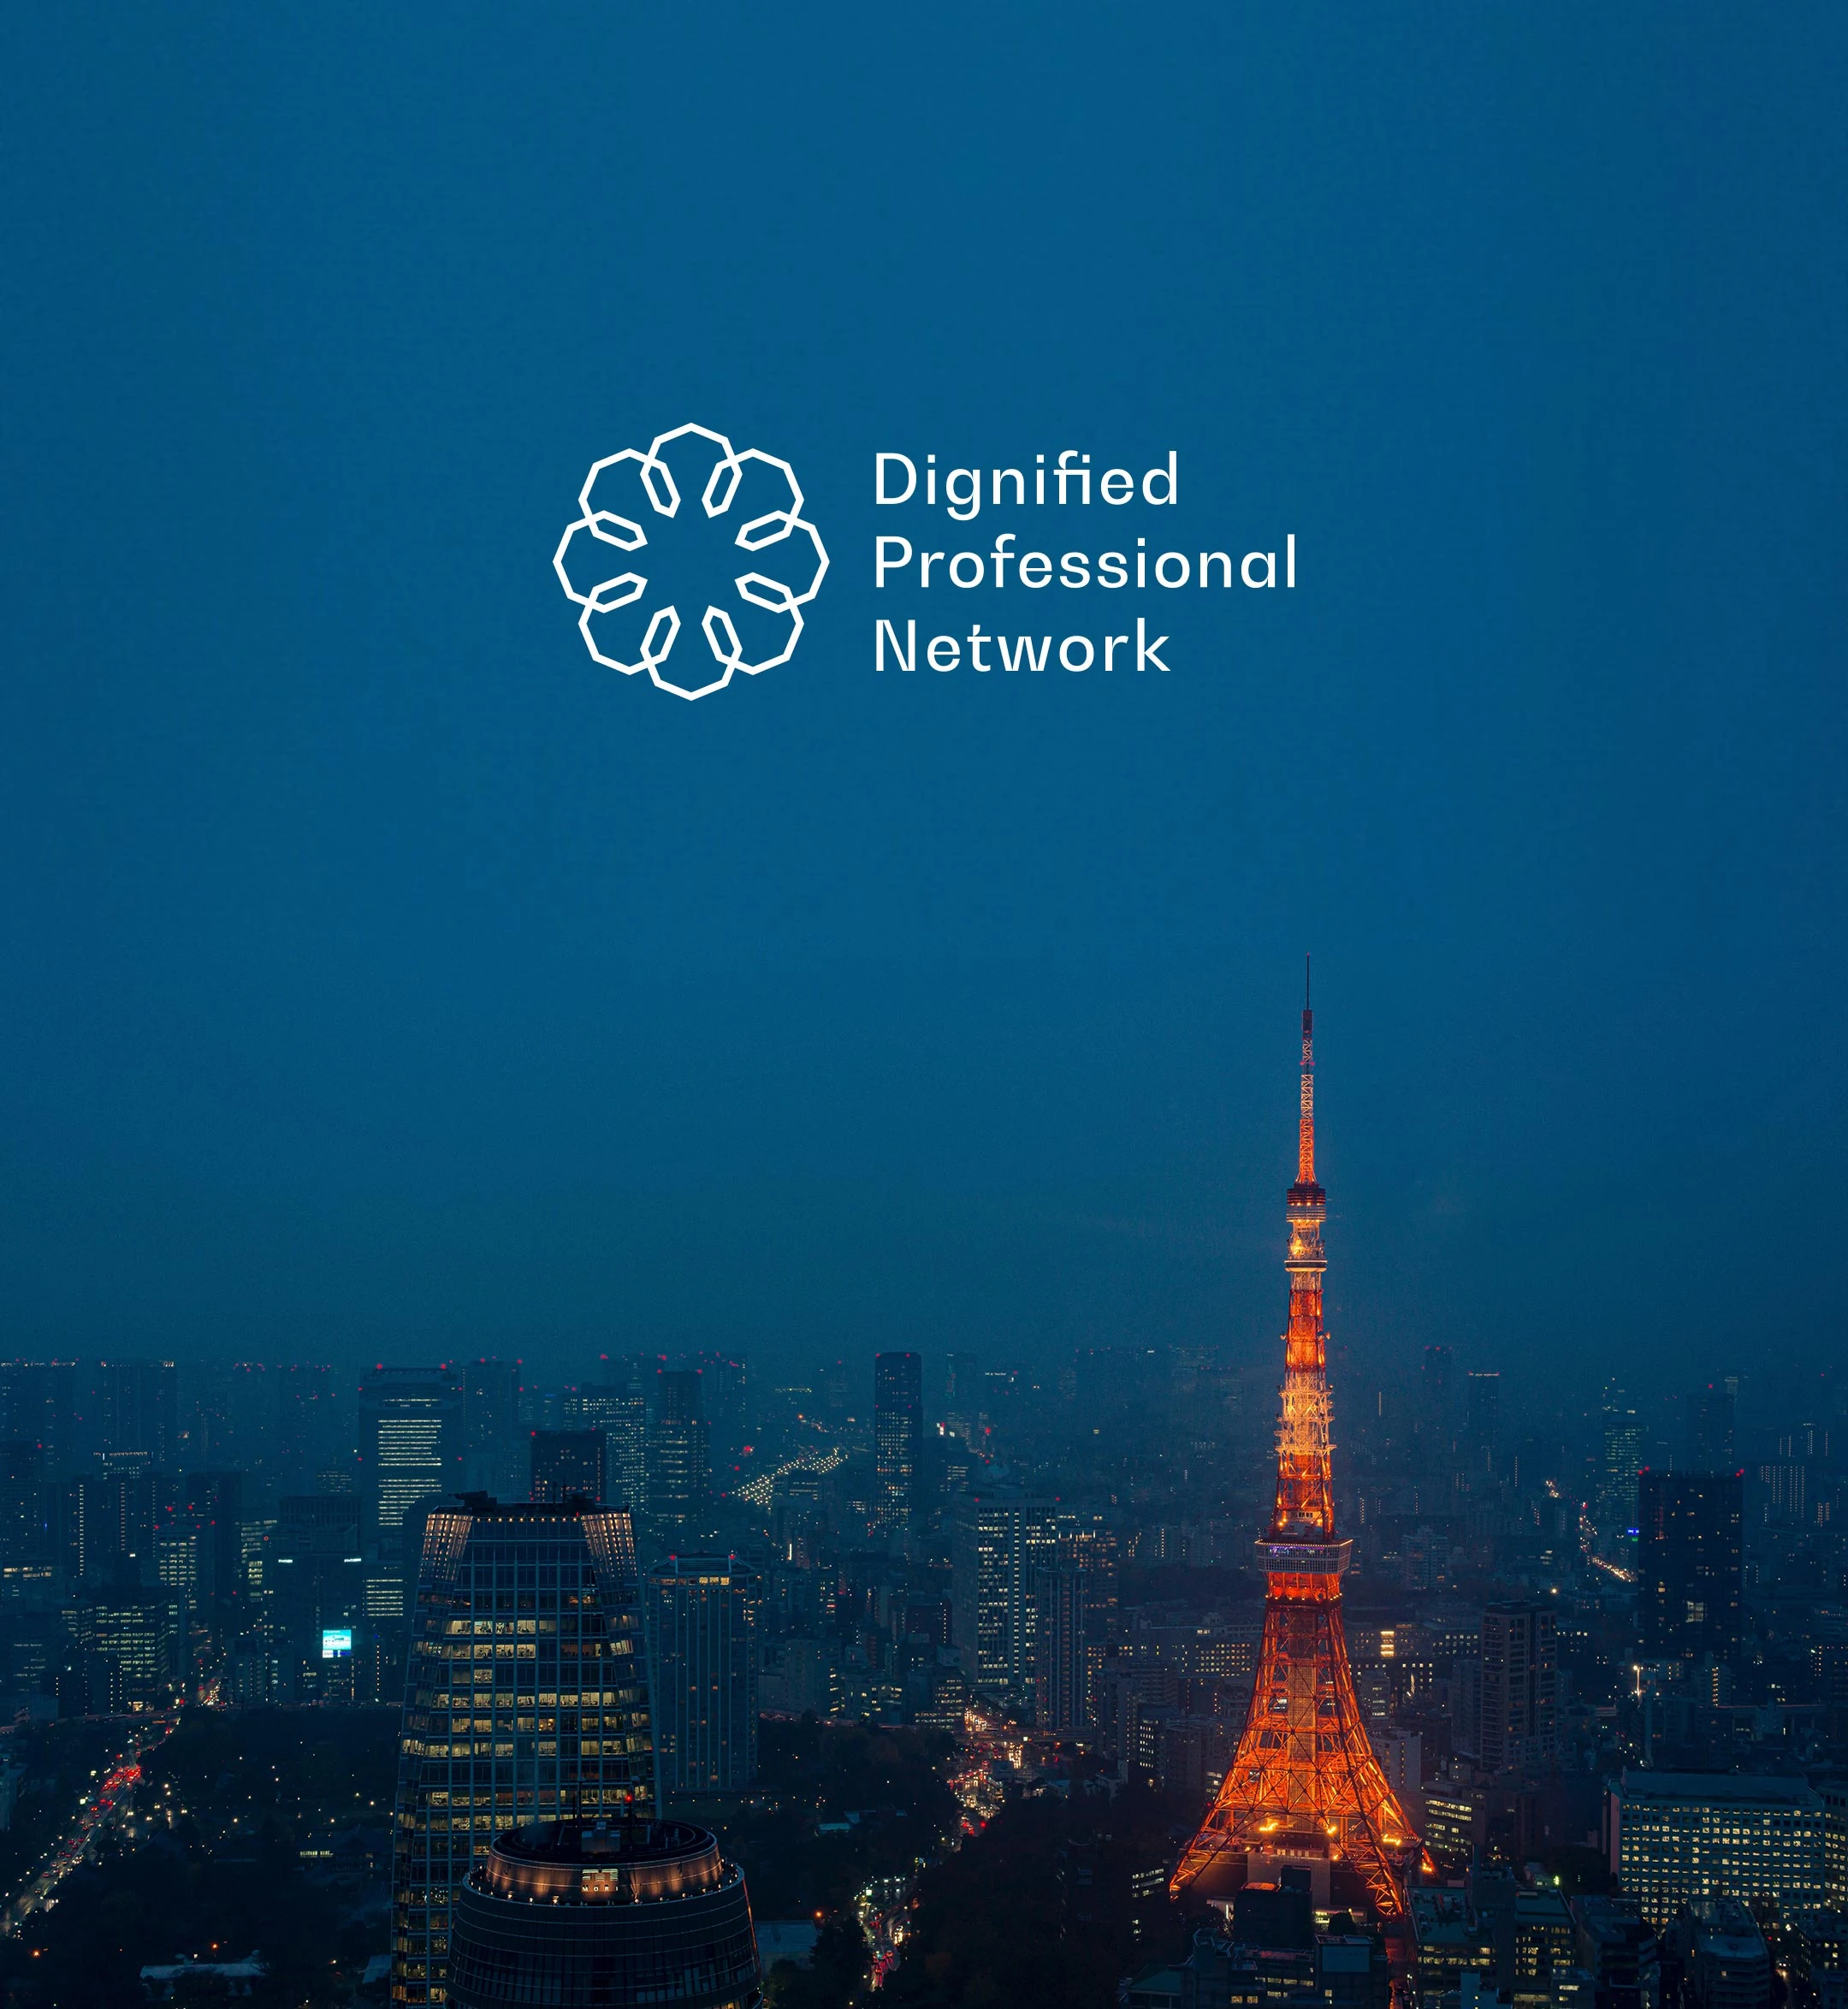 Dignified Professional Network (志士ネットワーク) - Visual Identity Design (VI/CI), Logo & Design Guideline